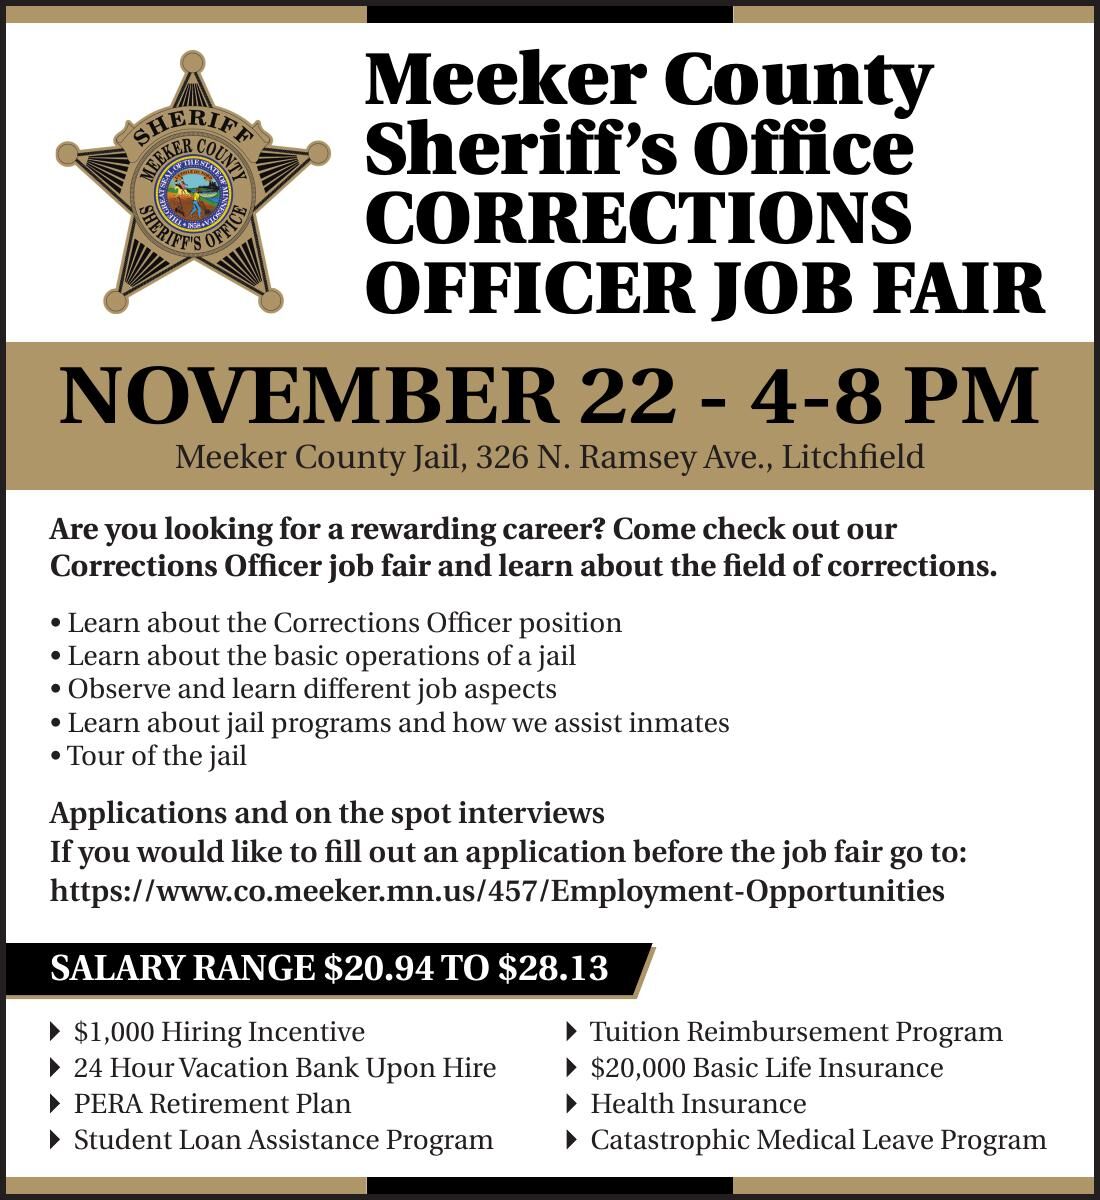 Meeker County Sheriff’s Office